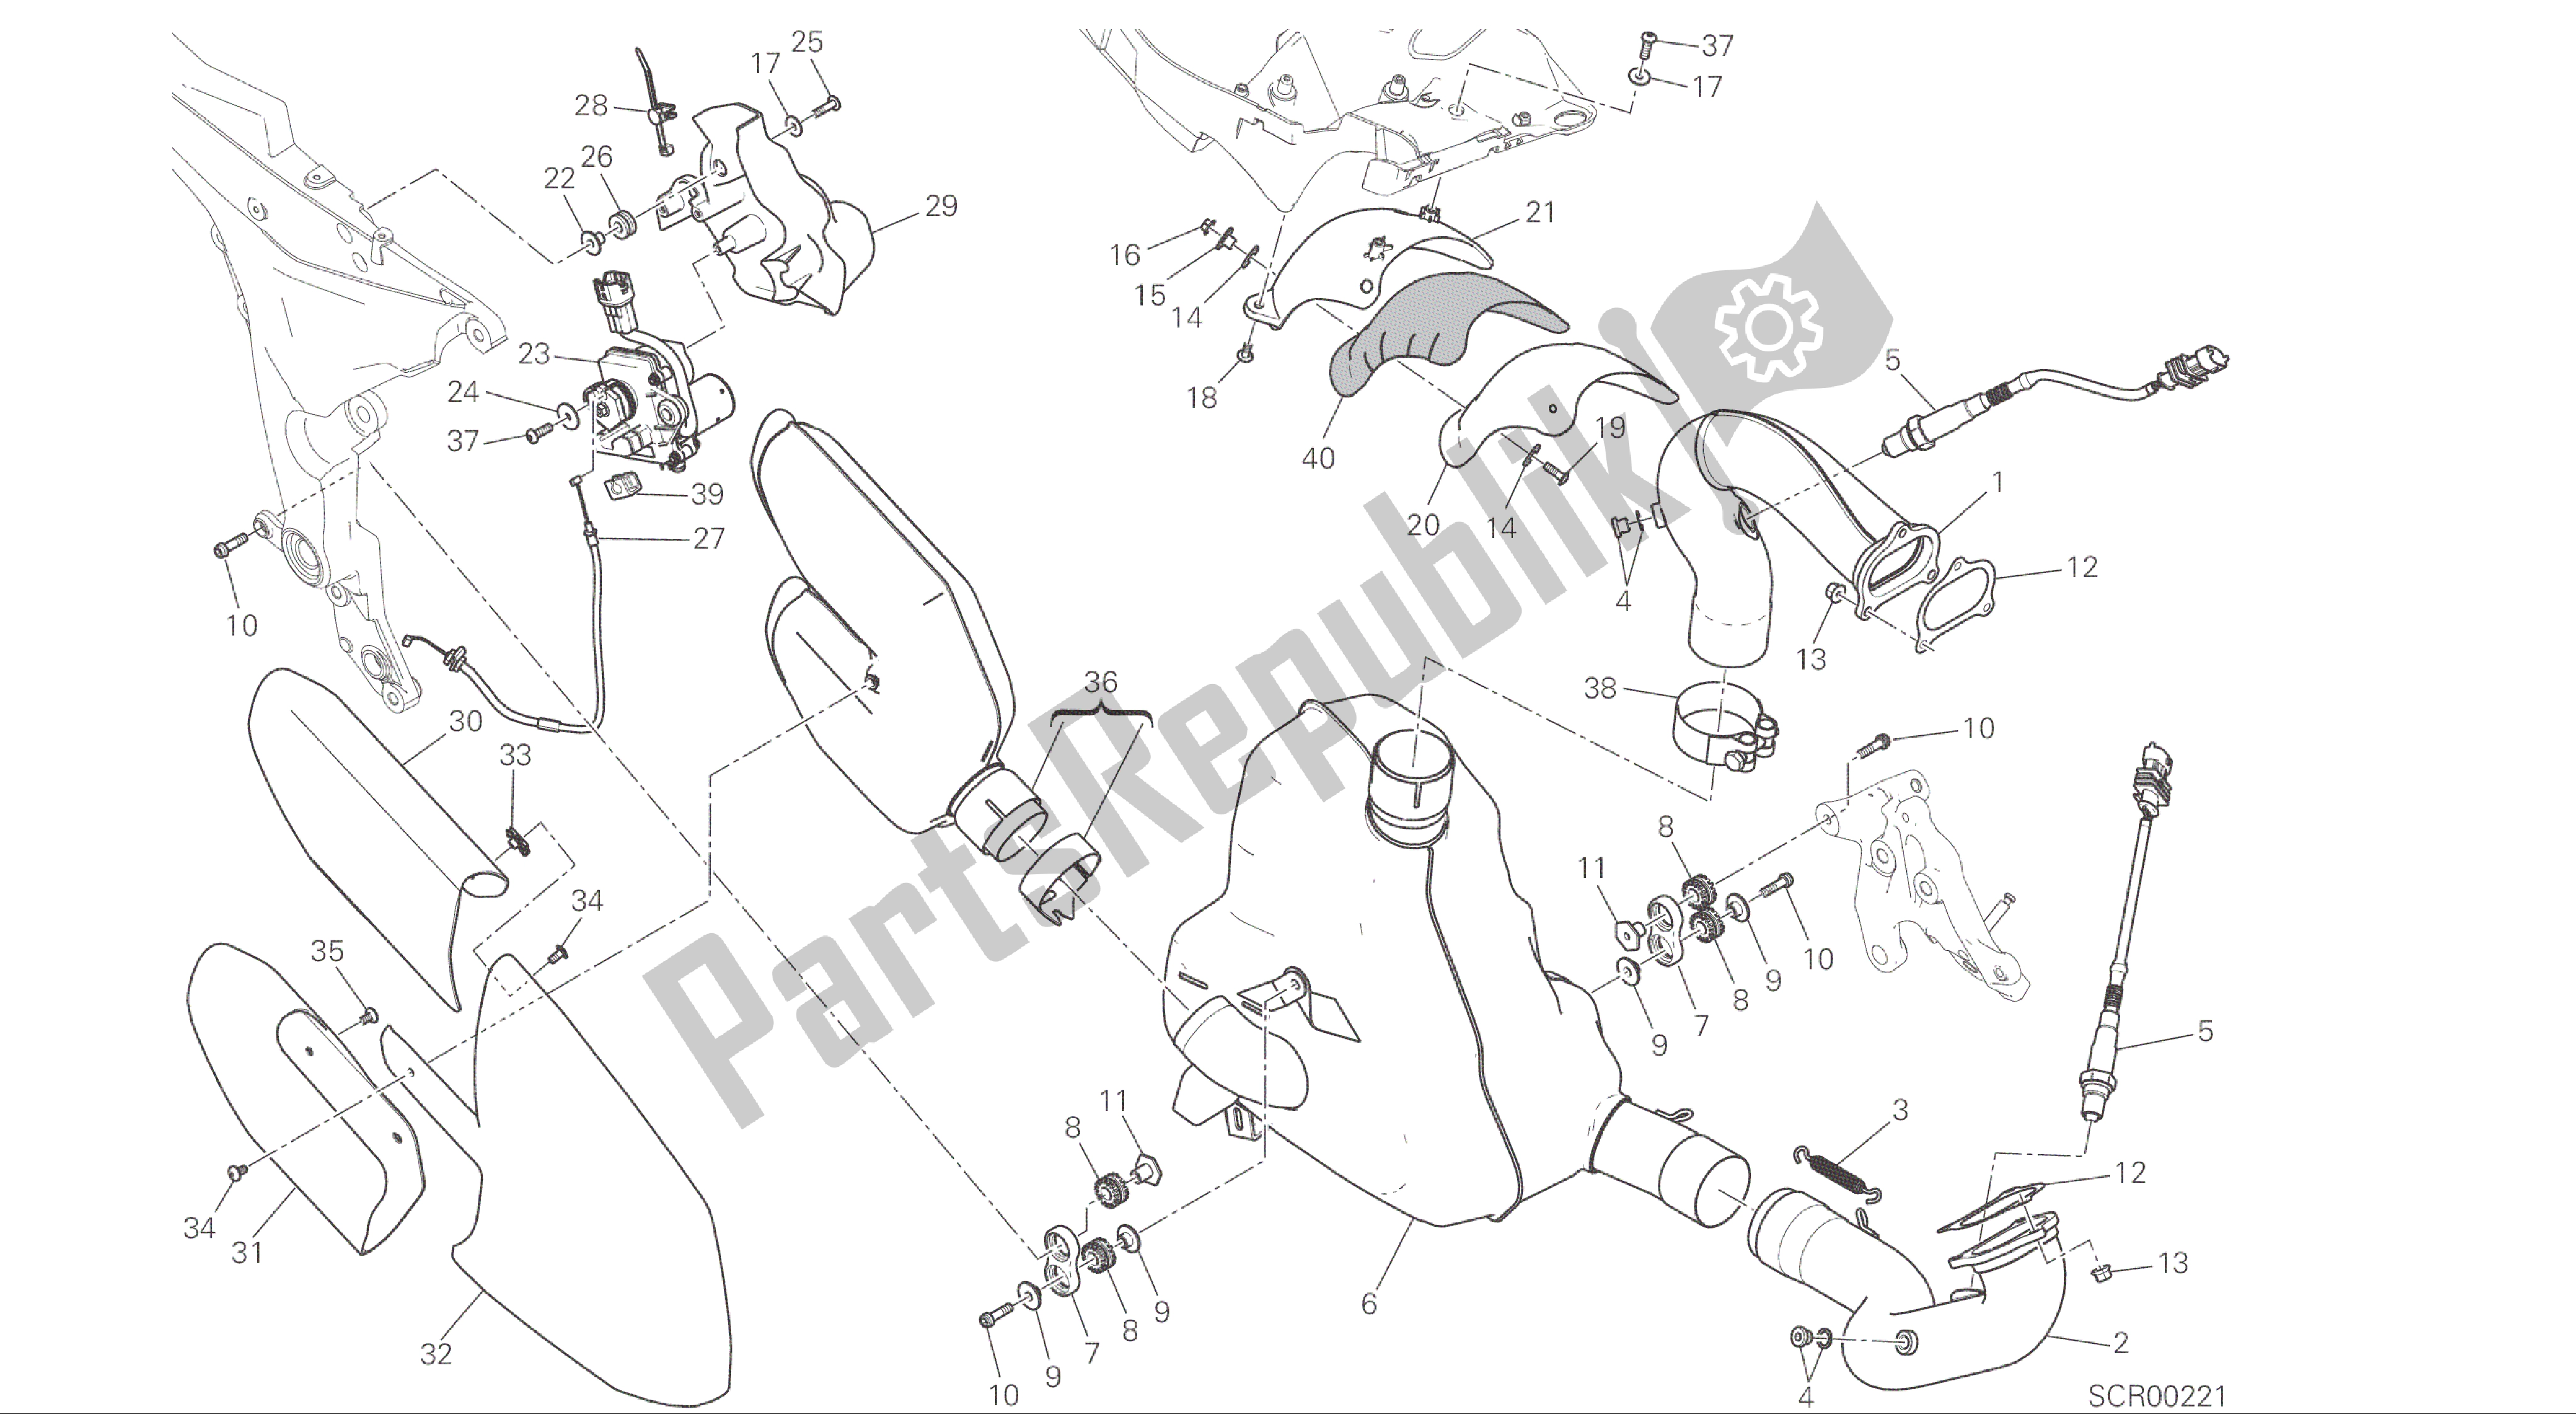 Tutte le parti per il Disegno 019 - Impianto Di Scarico [mod: Ms1200; Xst: Aus, Eur, Fra, Jap] Gruppo Telaio del Ducati Multistrada 1200 2015